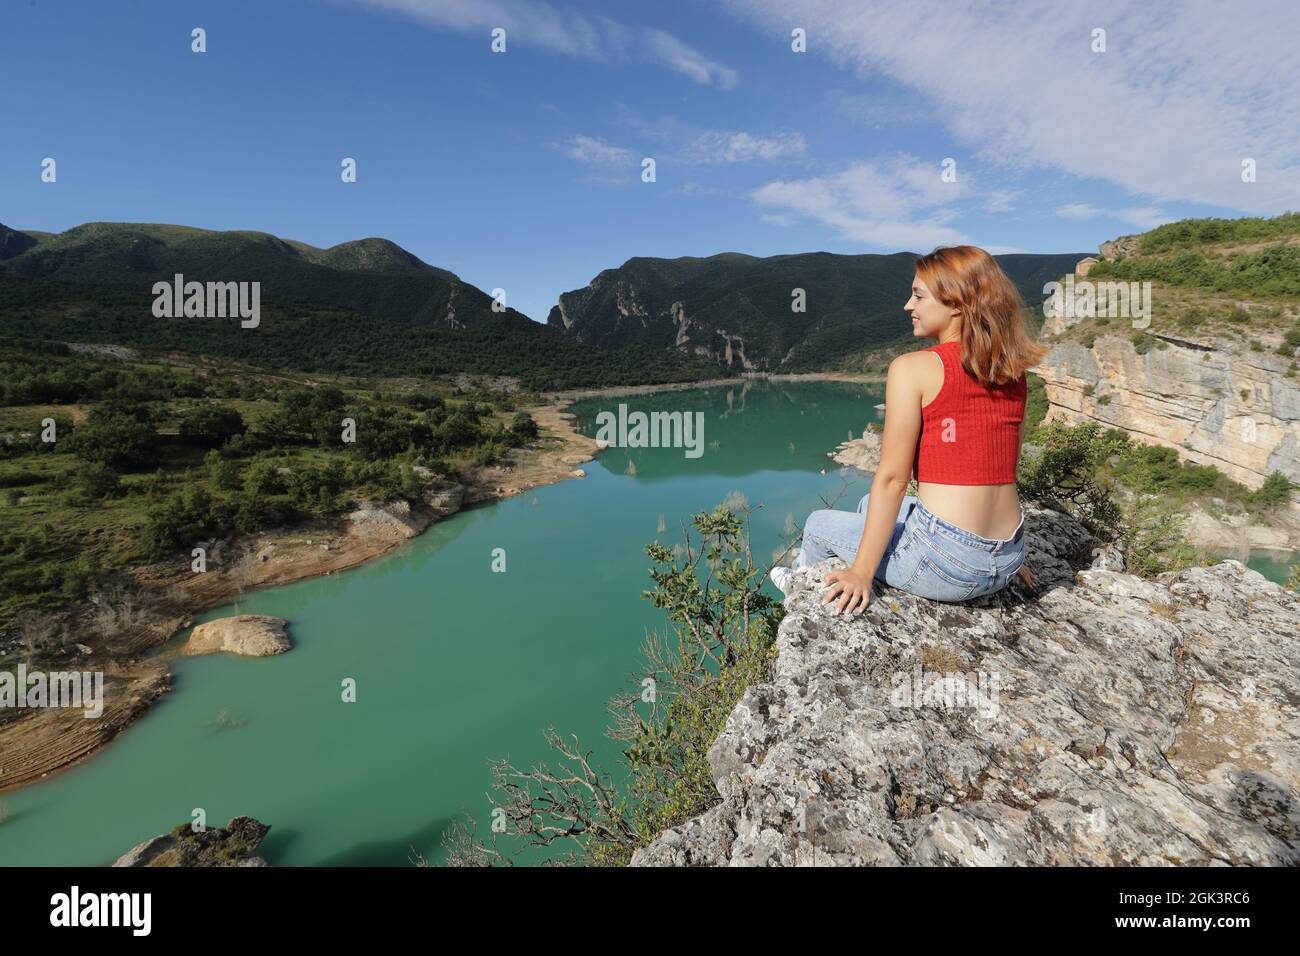 Glückliche Frau in Rot, die einen Blick auf einen See oben auf einer Klippe im Berg betrachtet Stockfoto